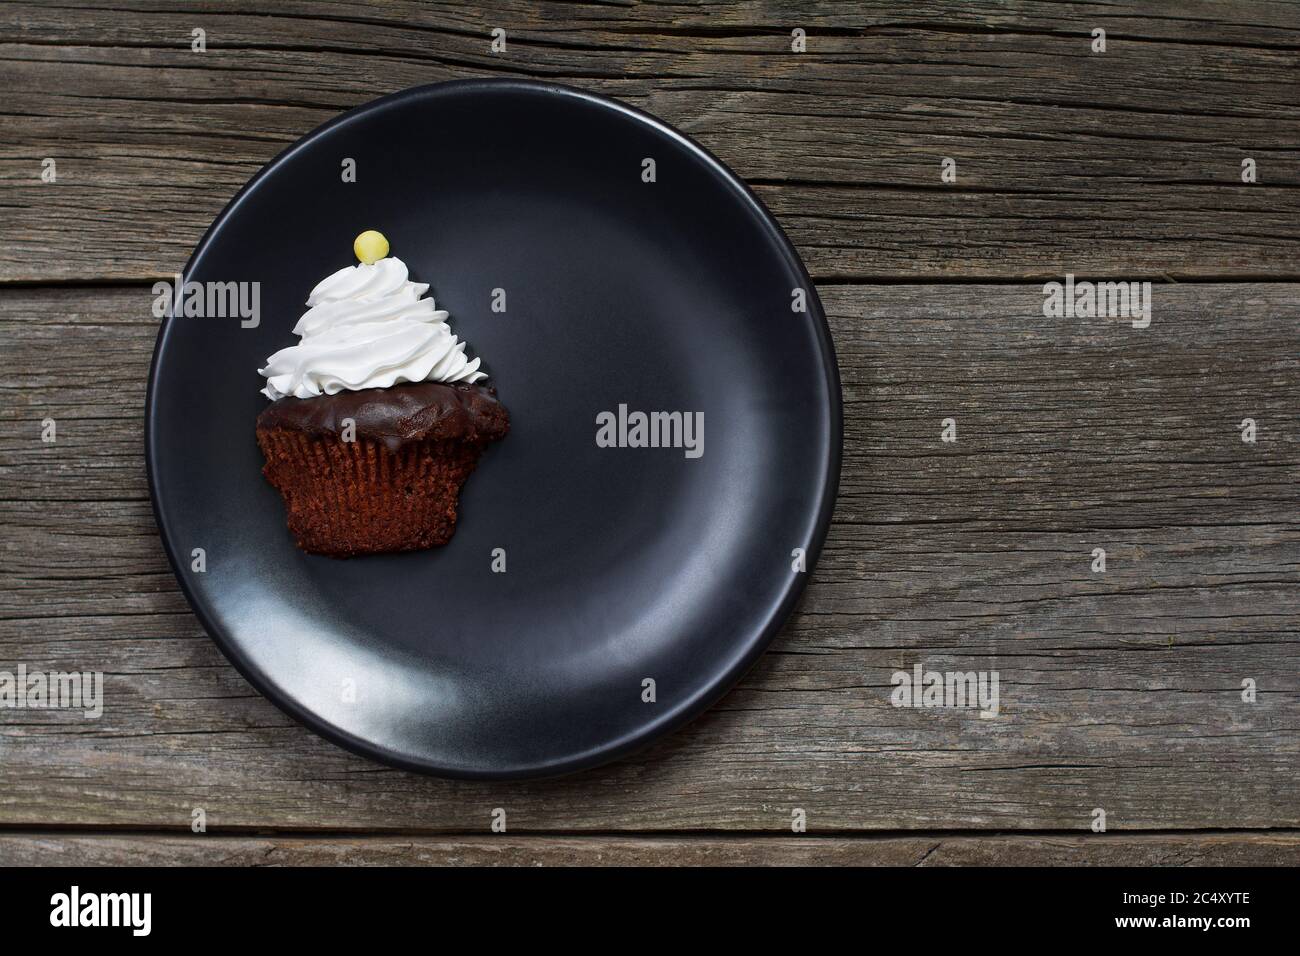 Ein Cupcake, gekrönt mit Schlagsahne und verziert mit einem Knopf-förmigen Süßigkeiten, wurde vertikal geschnitten und auf einem Teller auf verwitterten Holzplanken platziert. Stockfoto